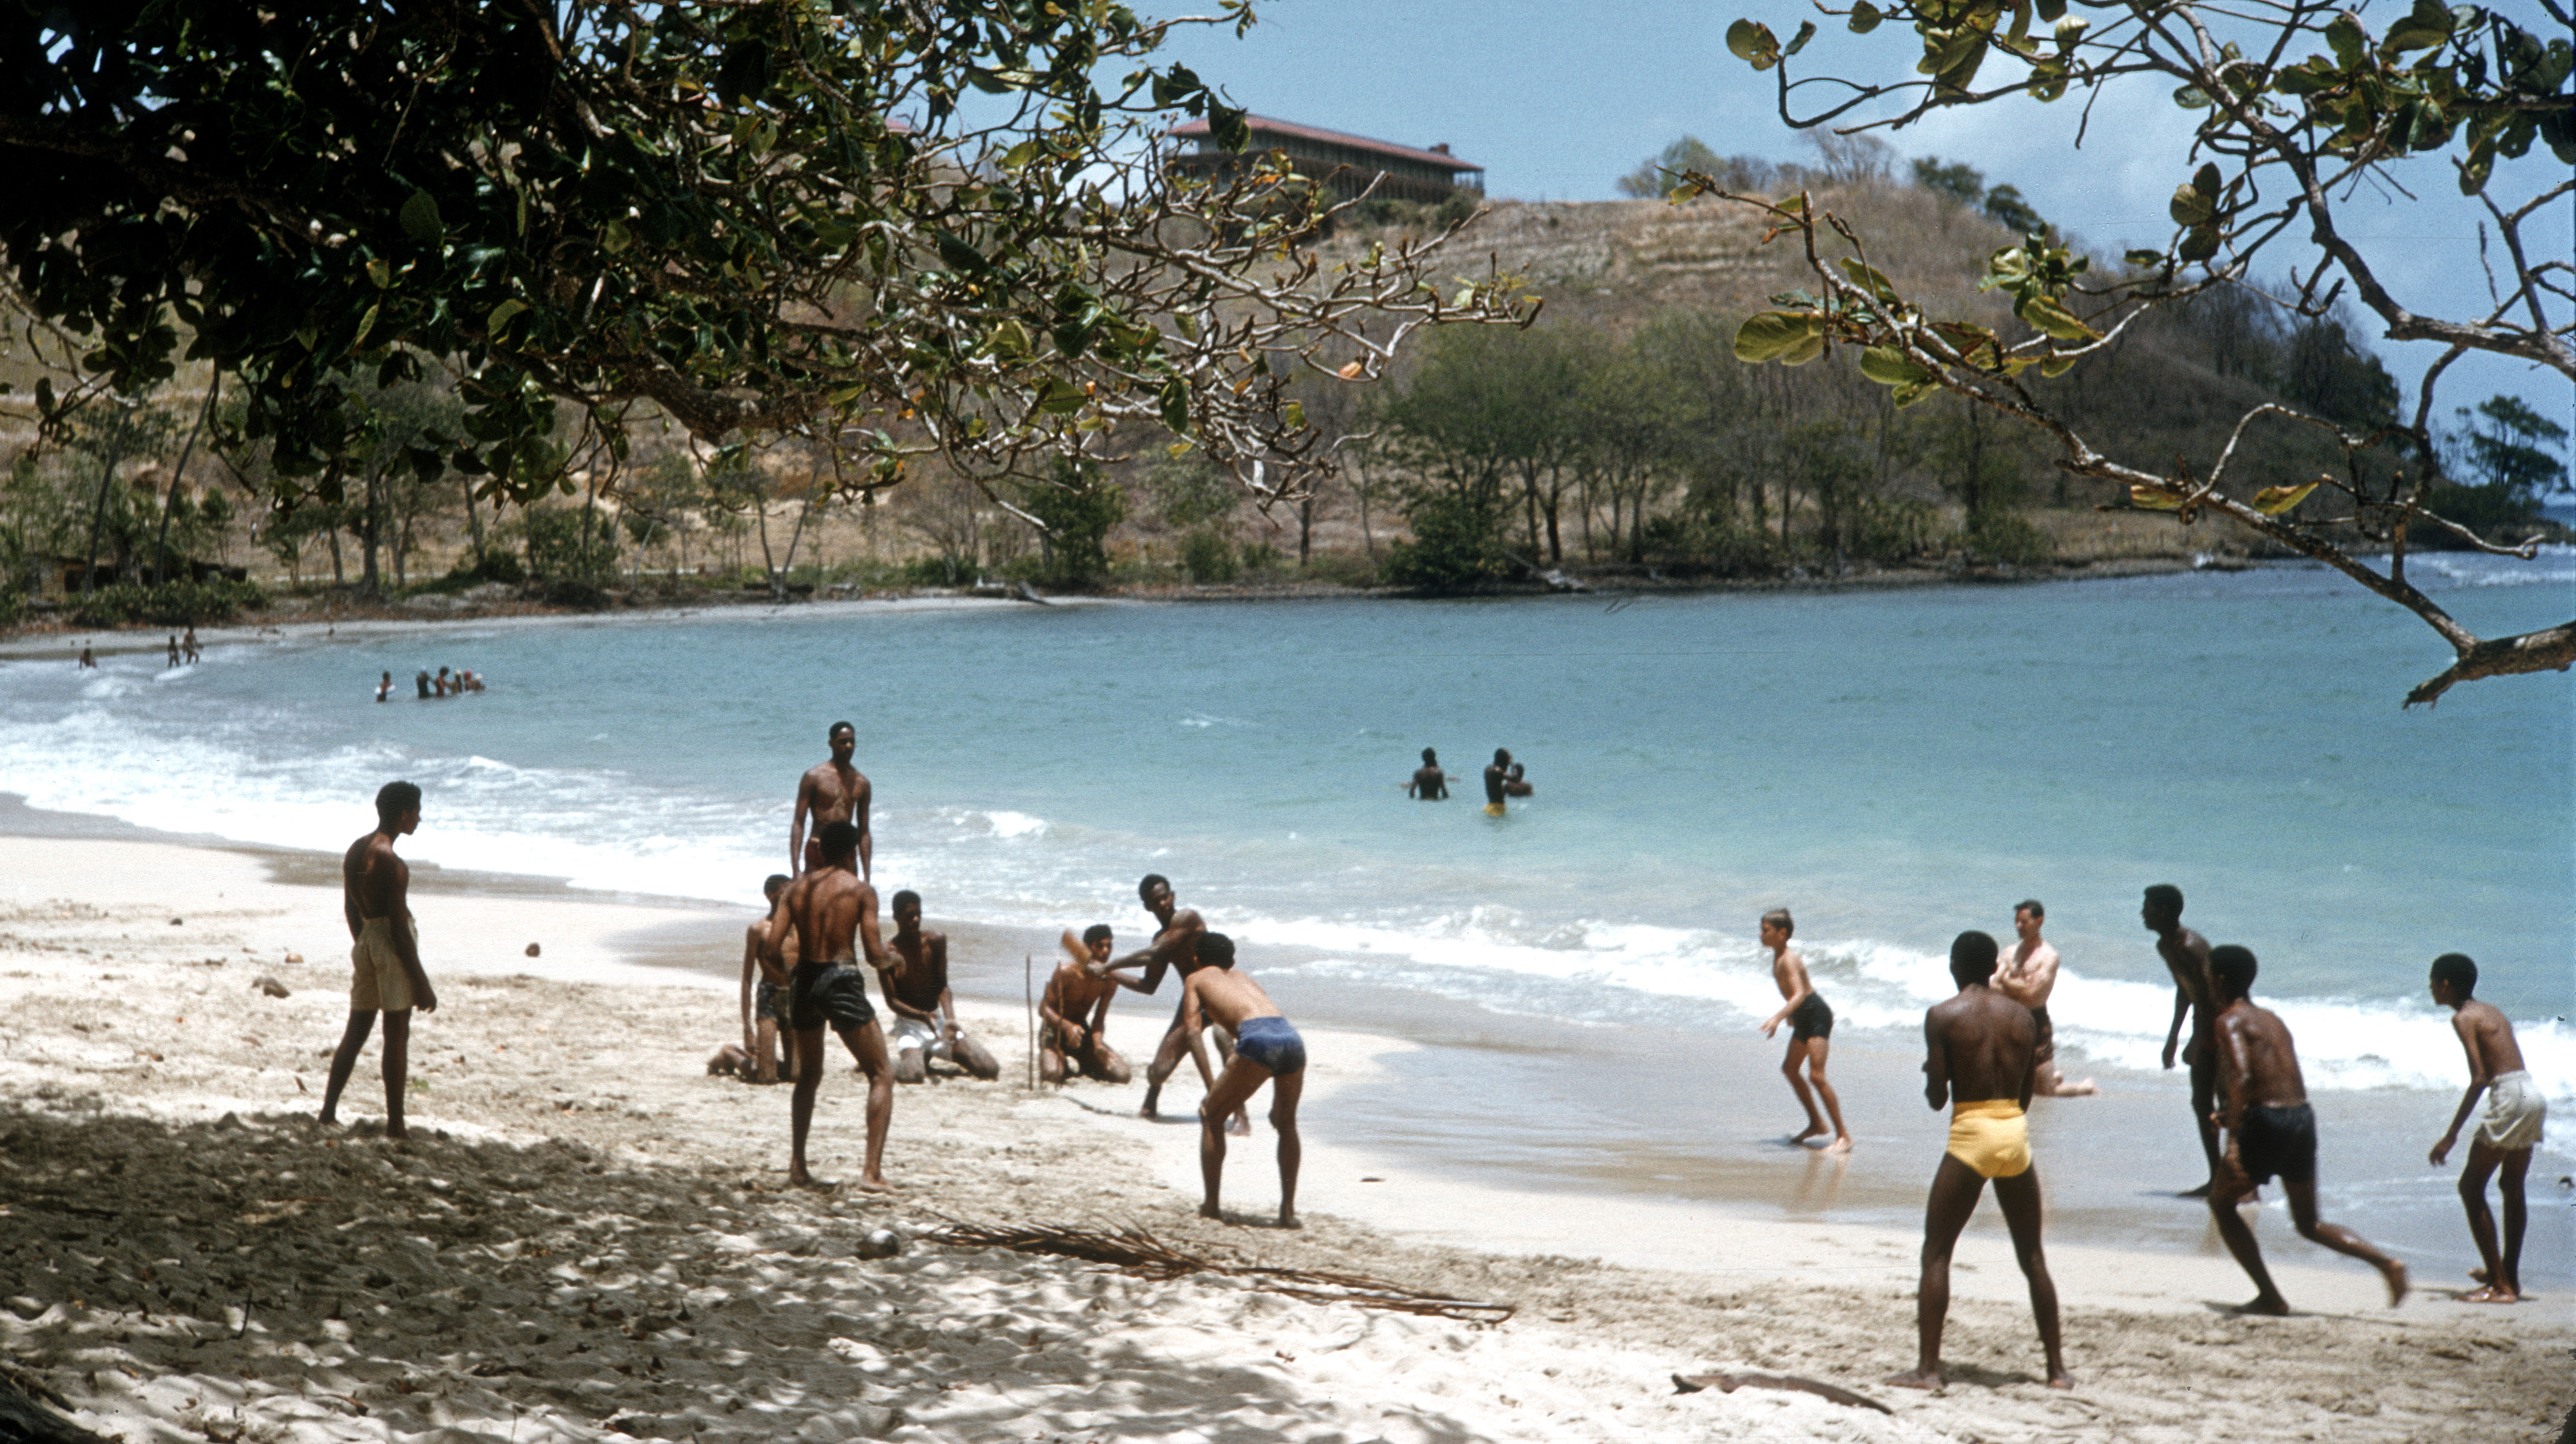 Cricket Game on a Beach, Puerto Rico, 1960